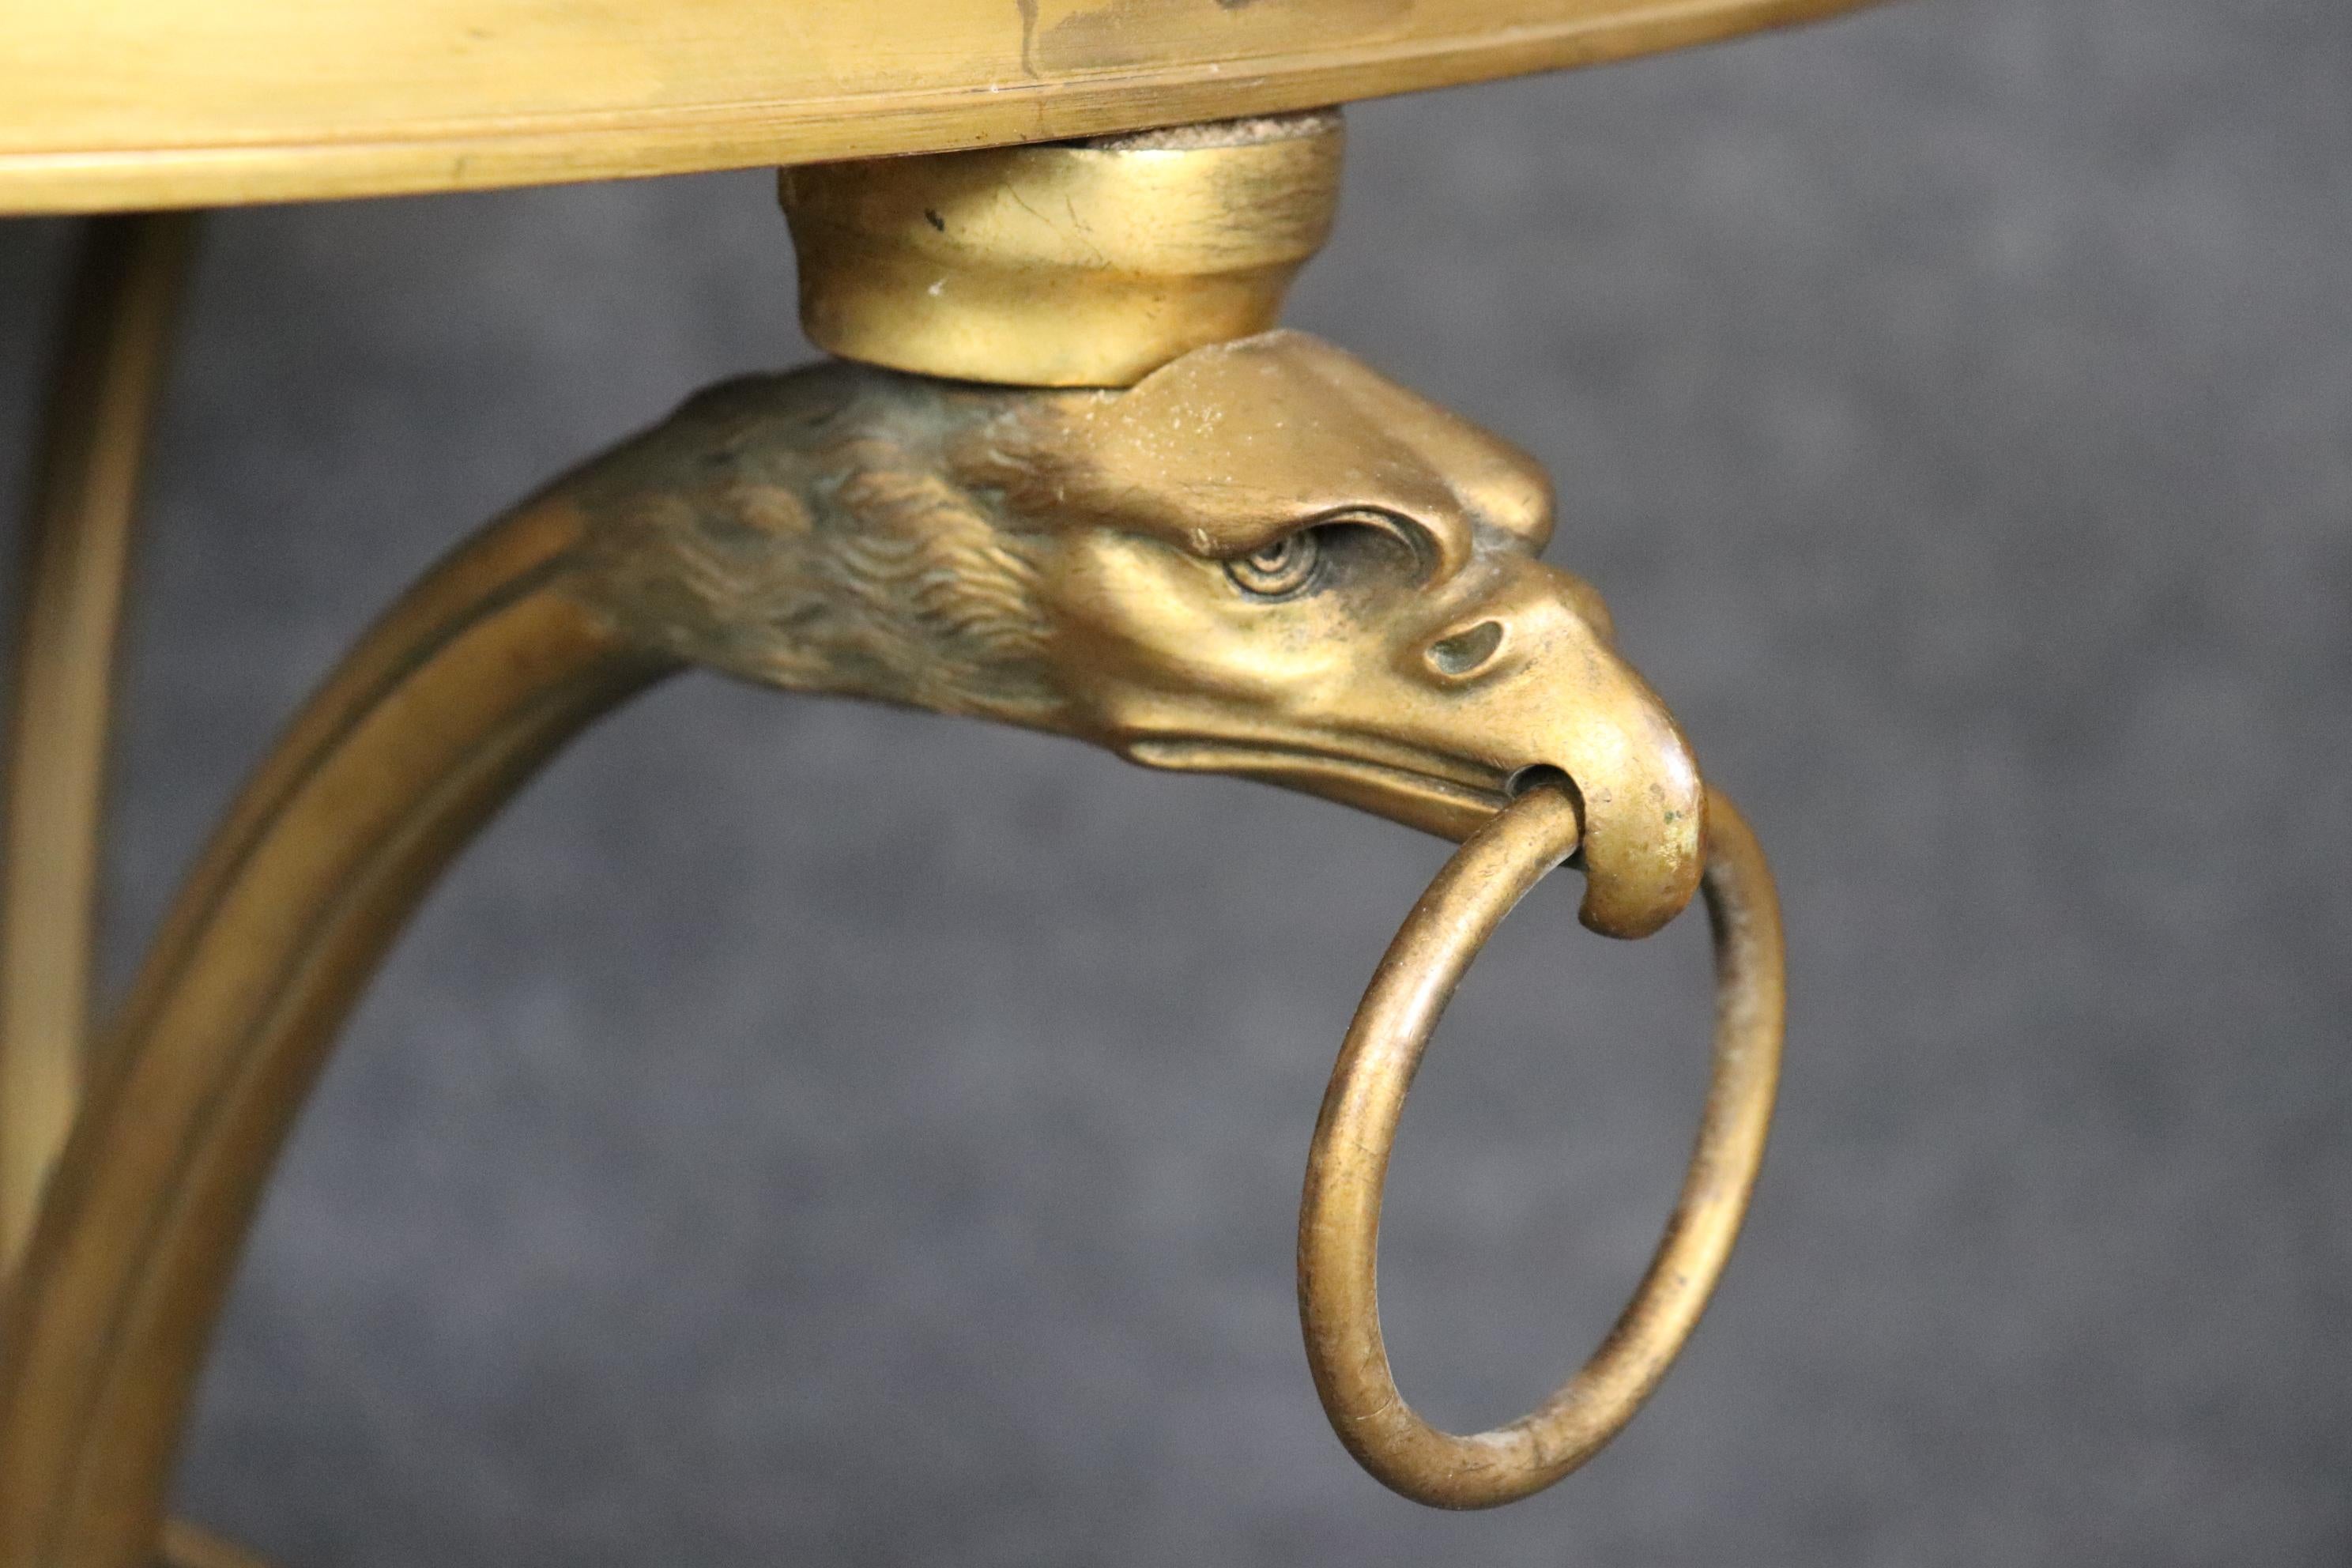 Dies ist ein feines Paar von Bronze-Adler-Kopf und Ring Directoire oder Regency-Stil Französisch Gueridons. Die Gueridons sind aus schwerer, massiver Bronze oder möglicherweise aus Messing gefertigt, obwohl wir glauben, dass sie aus Bronze sind. Auf